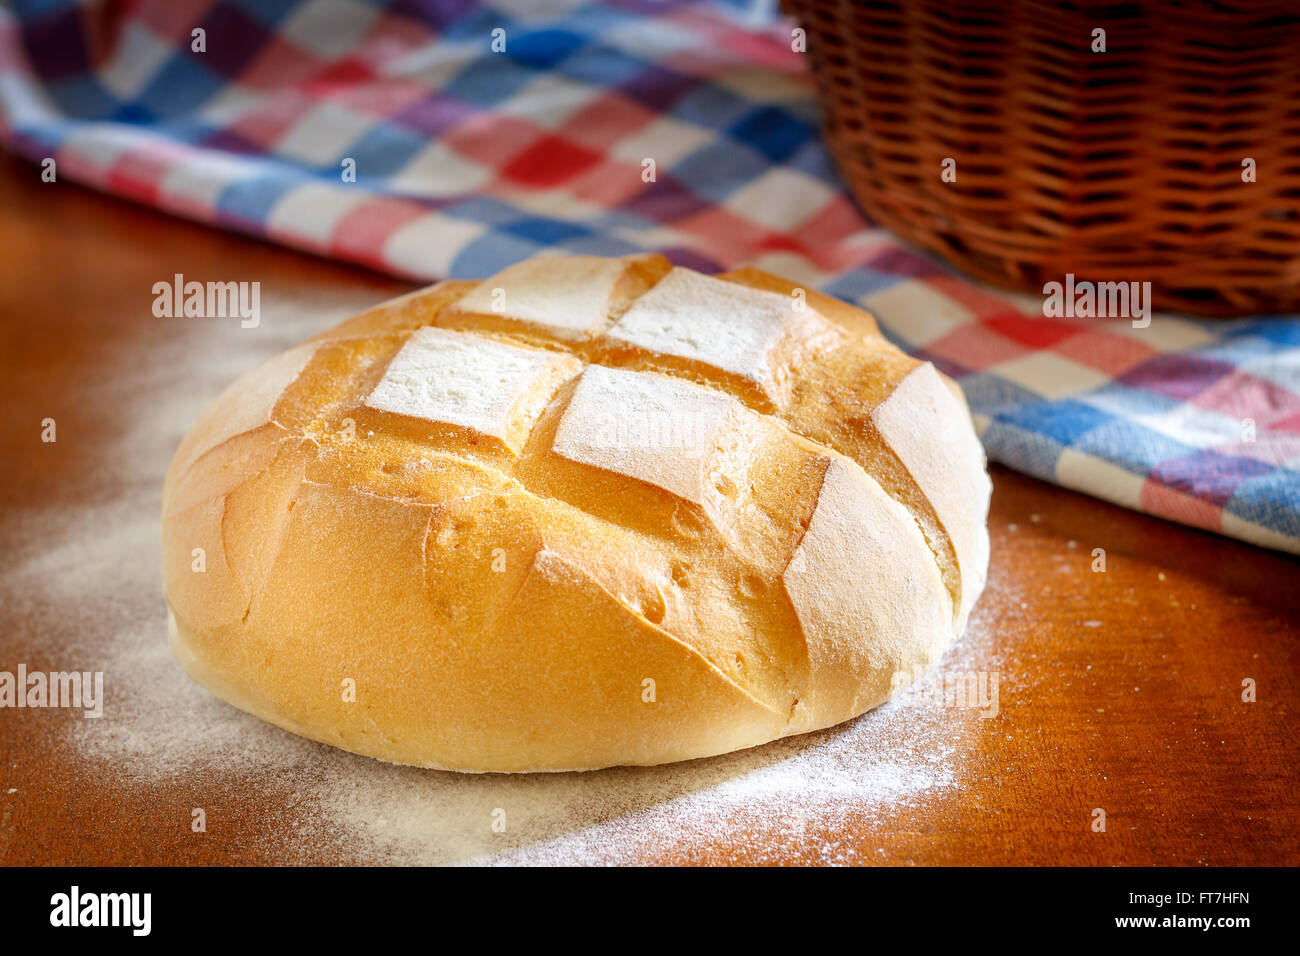 Runder Laib Brot mit Küche Lappen, Mehl und geflochtenen Korb Stockfoto